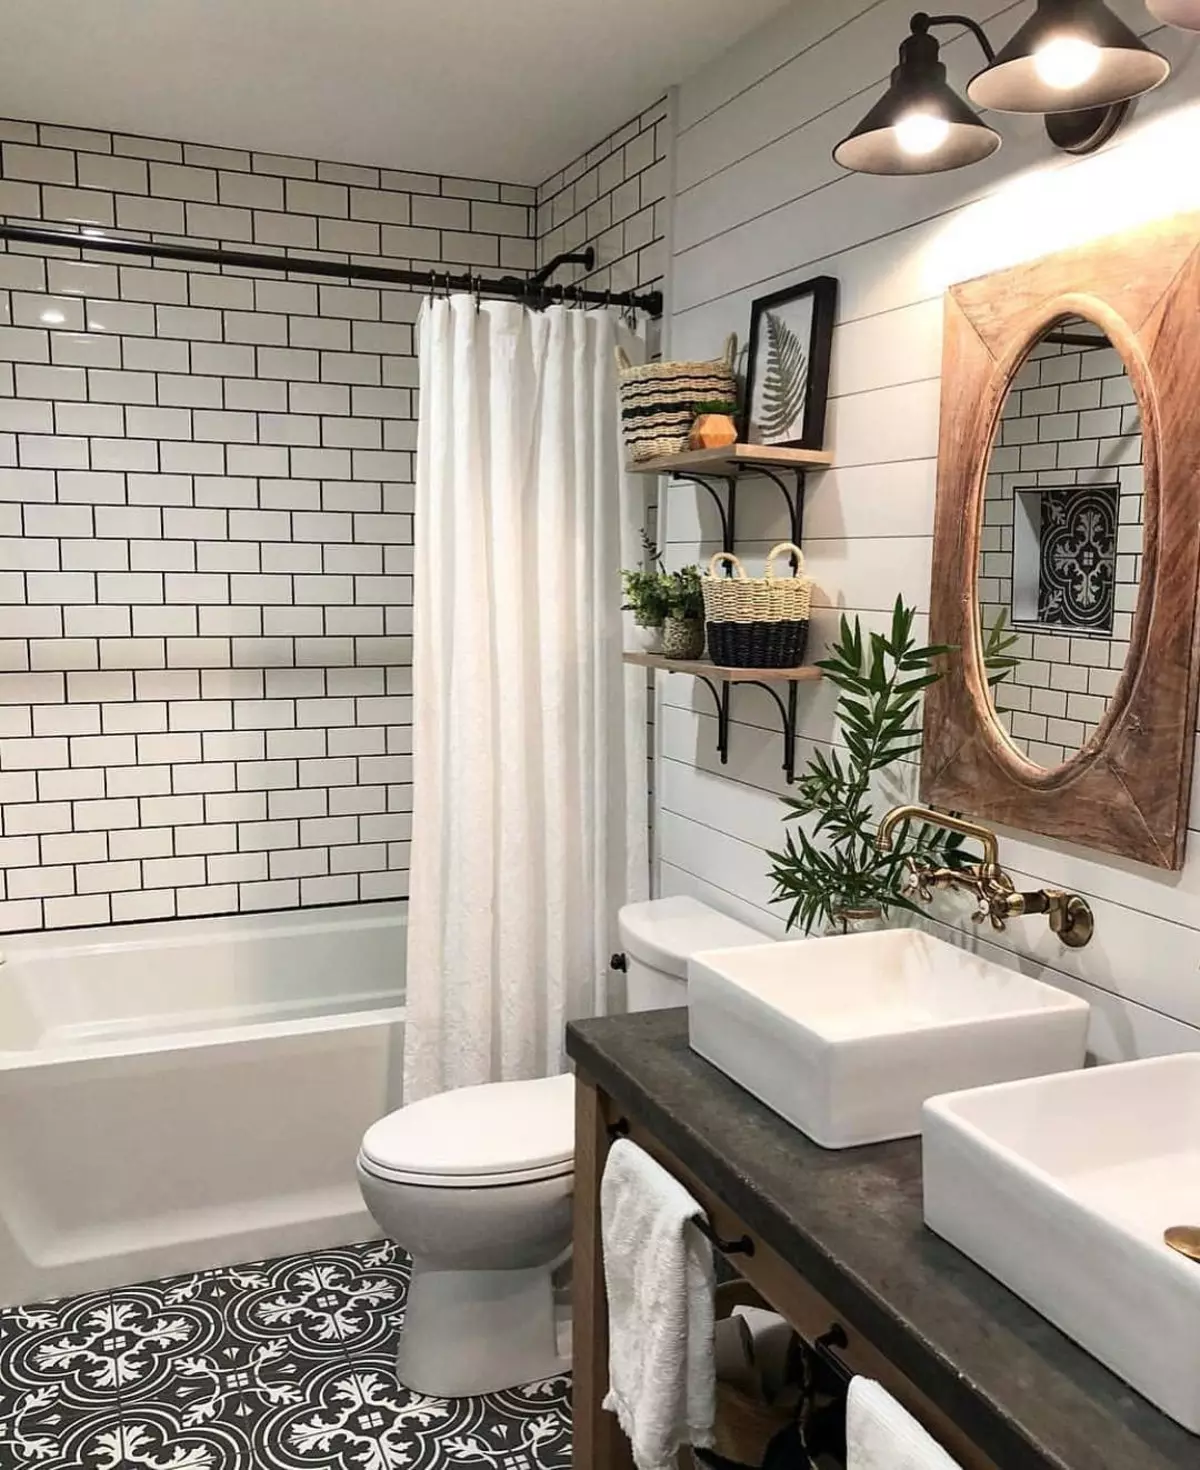 Cuarto de baño con estilo en estilo contemporáneo: foto, diseño, interior